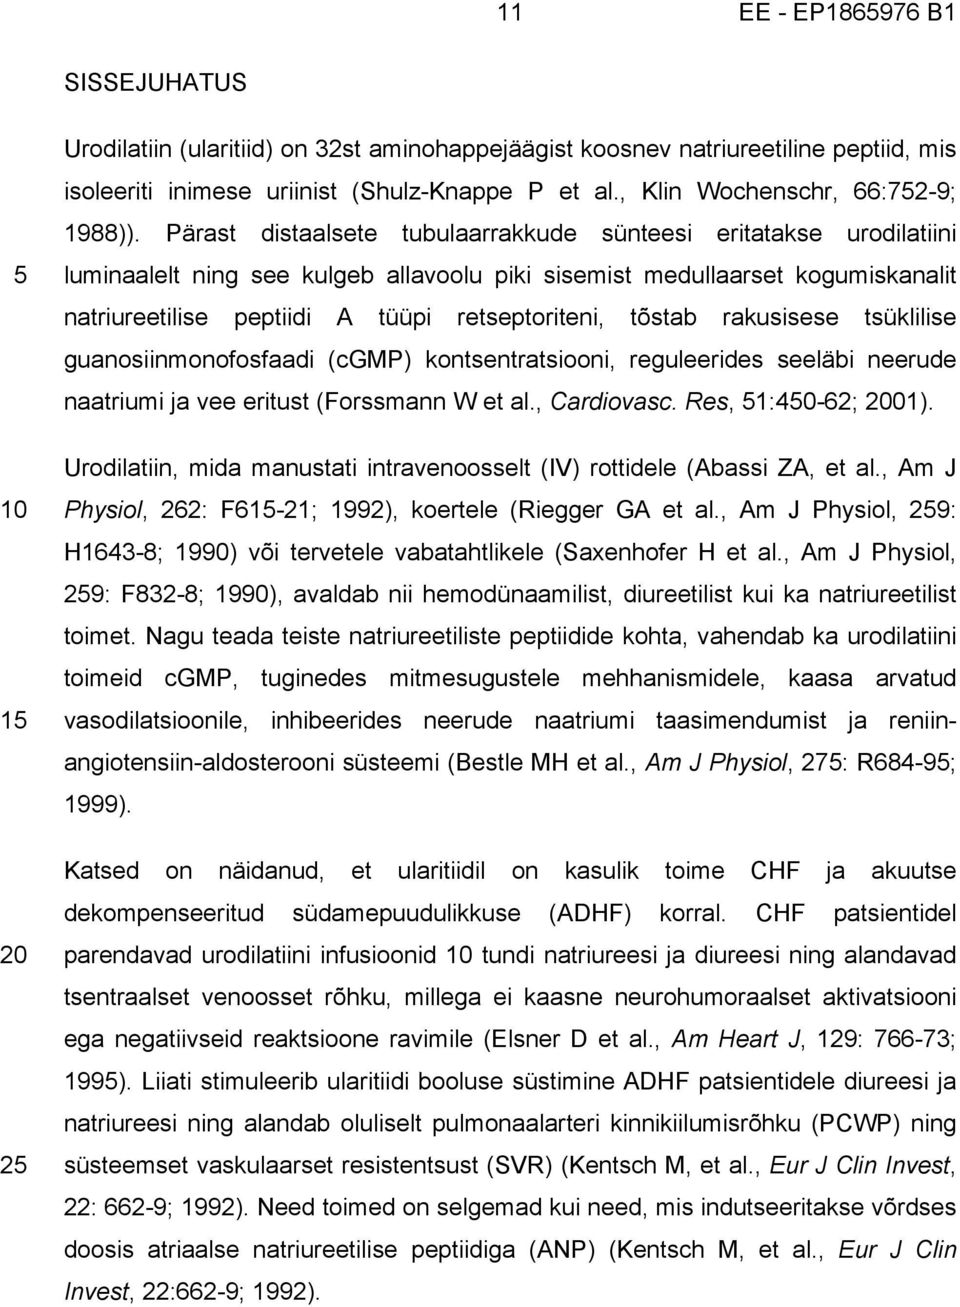 tõstab rakusisese tsüklilise guanosiinmonofosfaadi (cgmp) kontsentratsiooni, reguleerides seeläbi neerude naatriumi ja vee eritust (Forssmann W et al., Cardiovasc. Res, 51:450-62; 01).